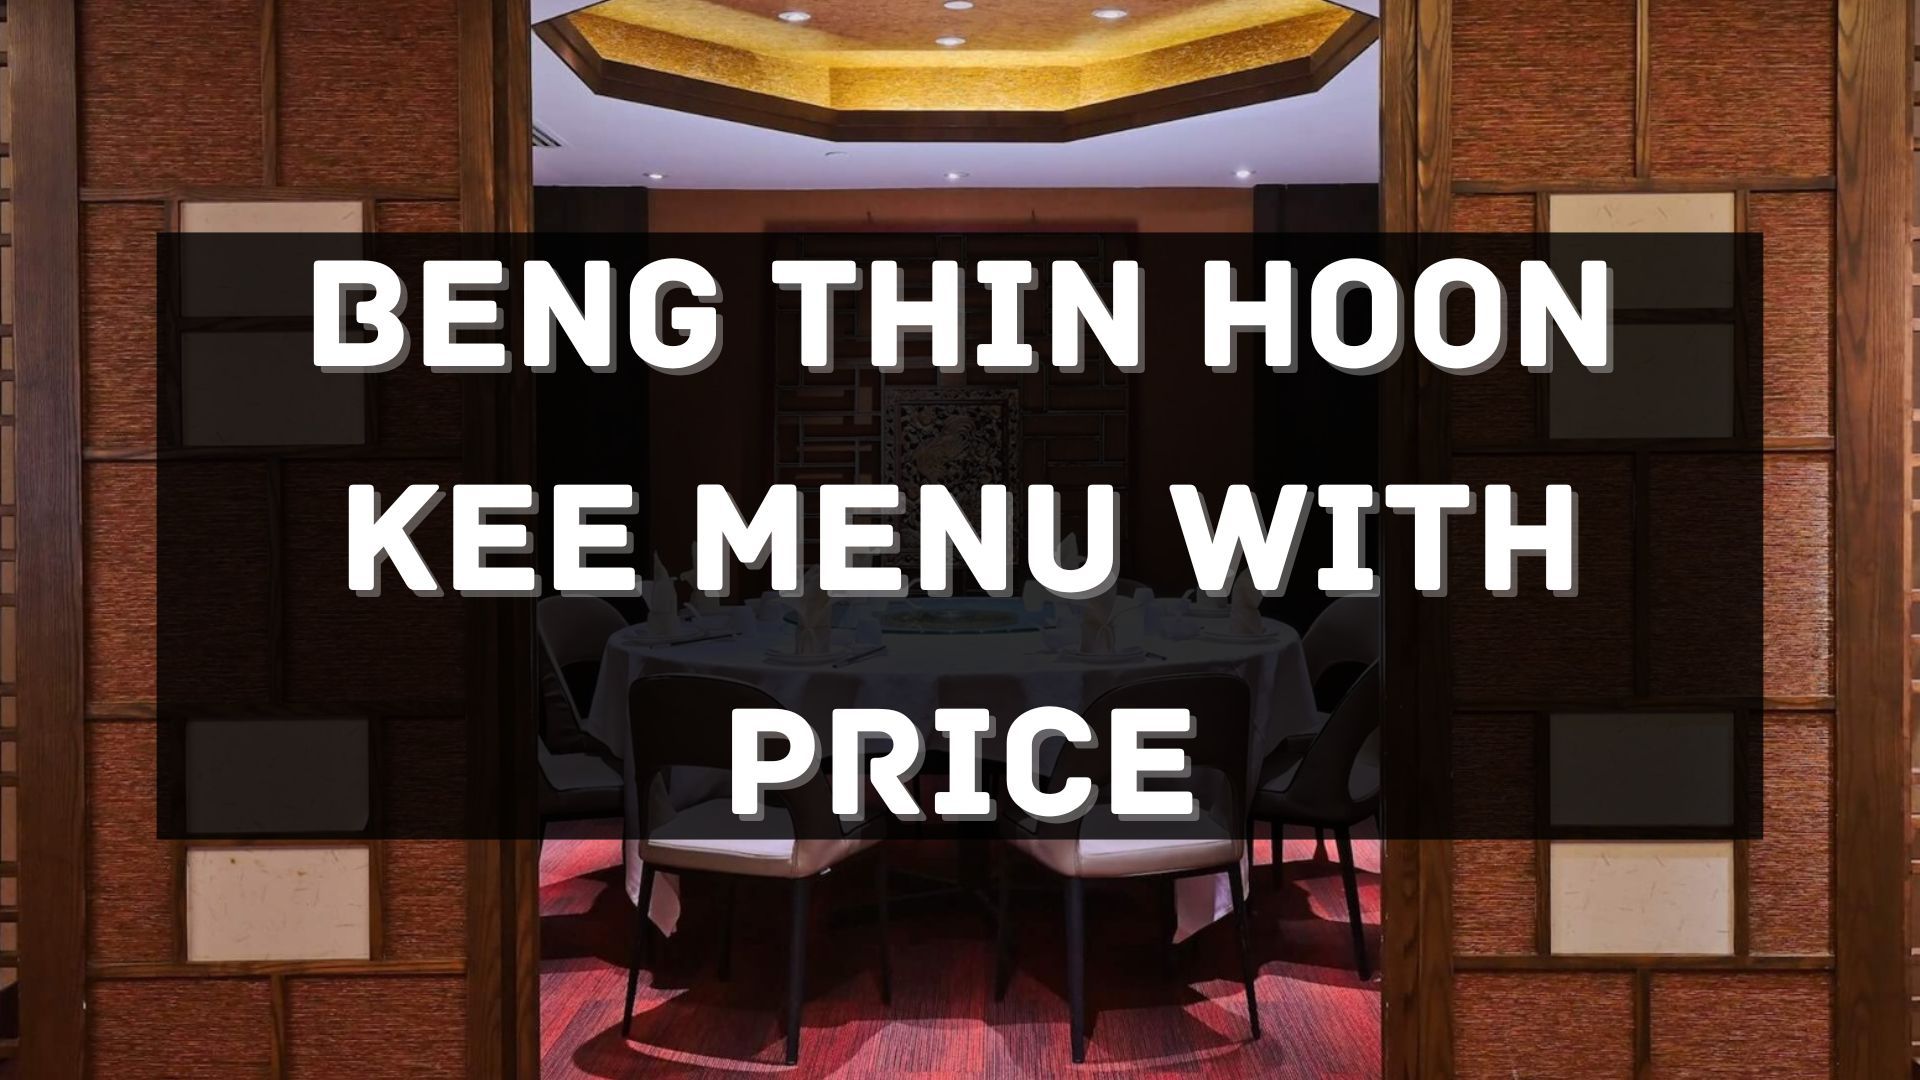 beng thin hoon kee menu prices singapore